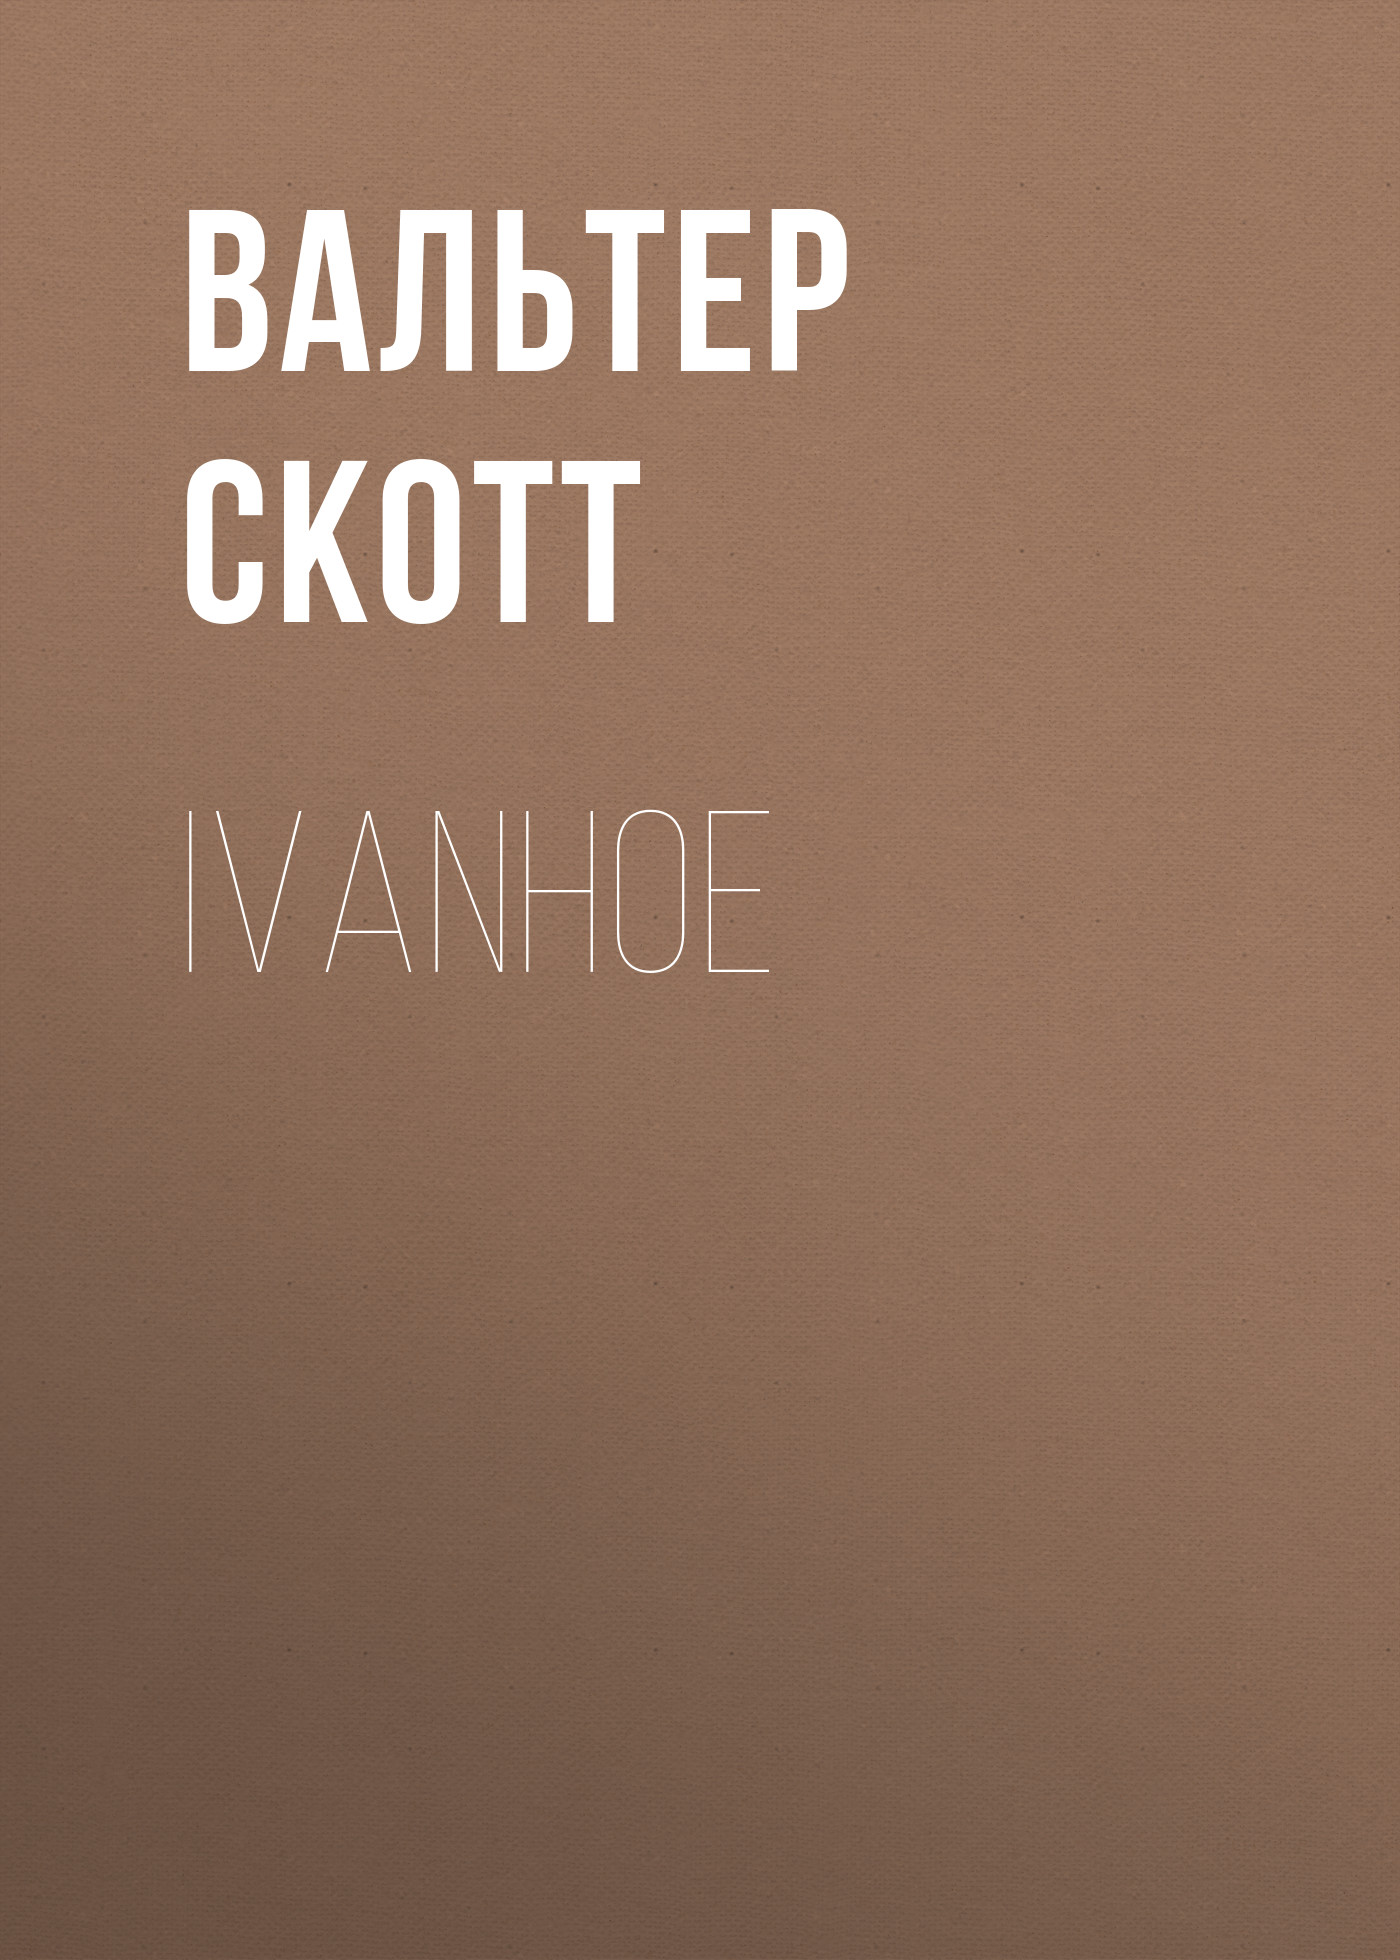 Книга Ivanhoe из серии , созданная Вальтер Скотт, может относится к жанру Зарубежная старинная литература, Зарубежная классика. Стоимость электронной книги Ivanhoe с идентификатором 25449956 составляет 0 руб.